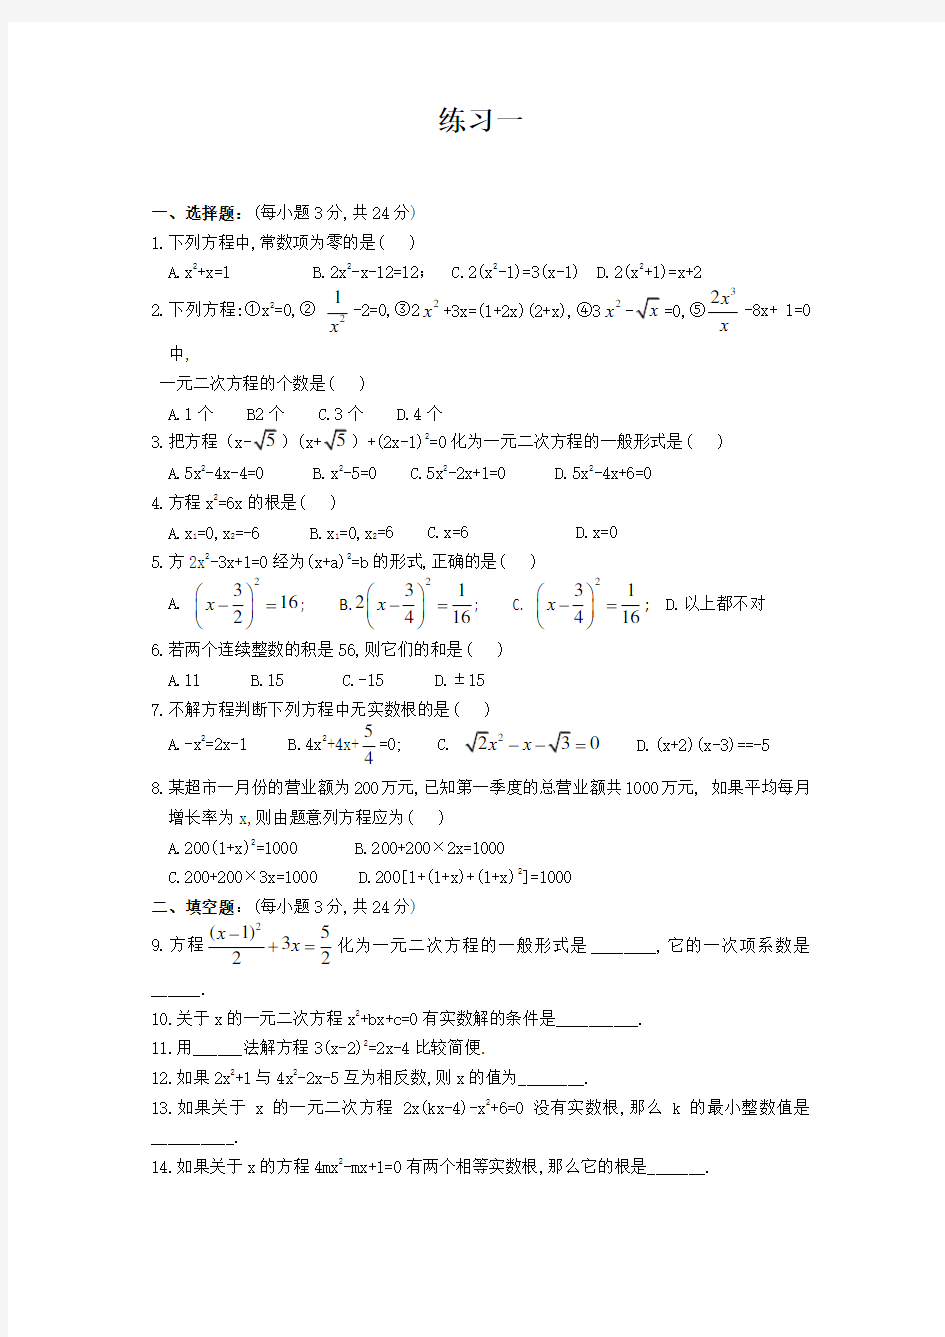 苏教版数学九年级上册一元二次方程经典练习题(6套)附带详细答案